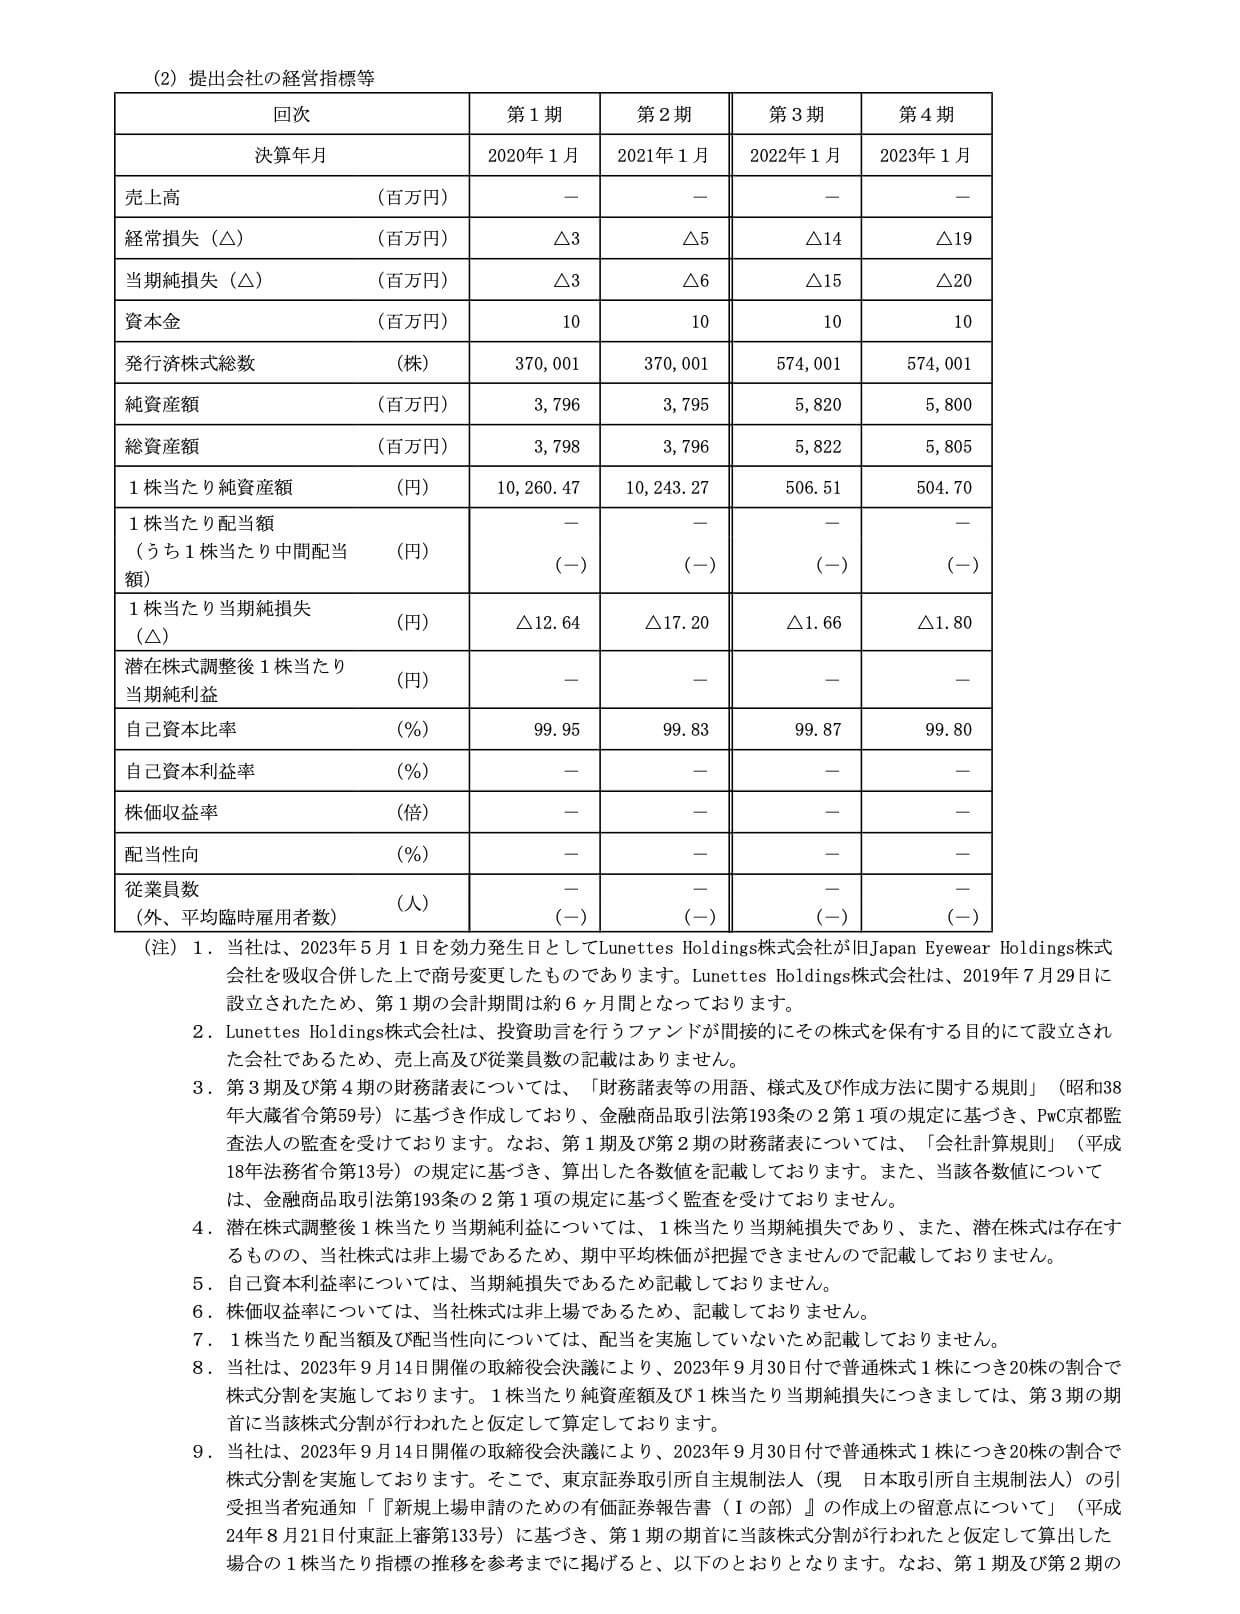 Japan Eyewear Holdings(5889)の主要な経営指標等の推移(単独)